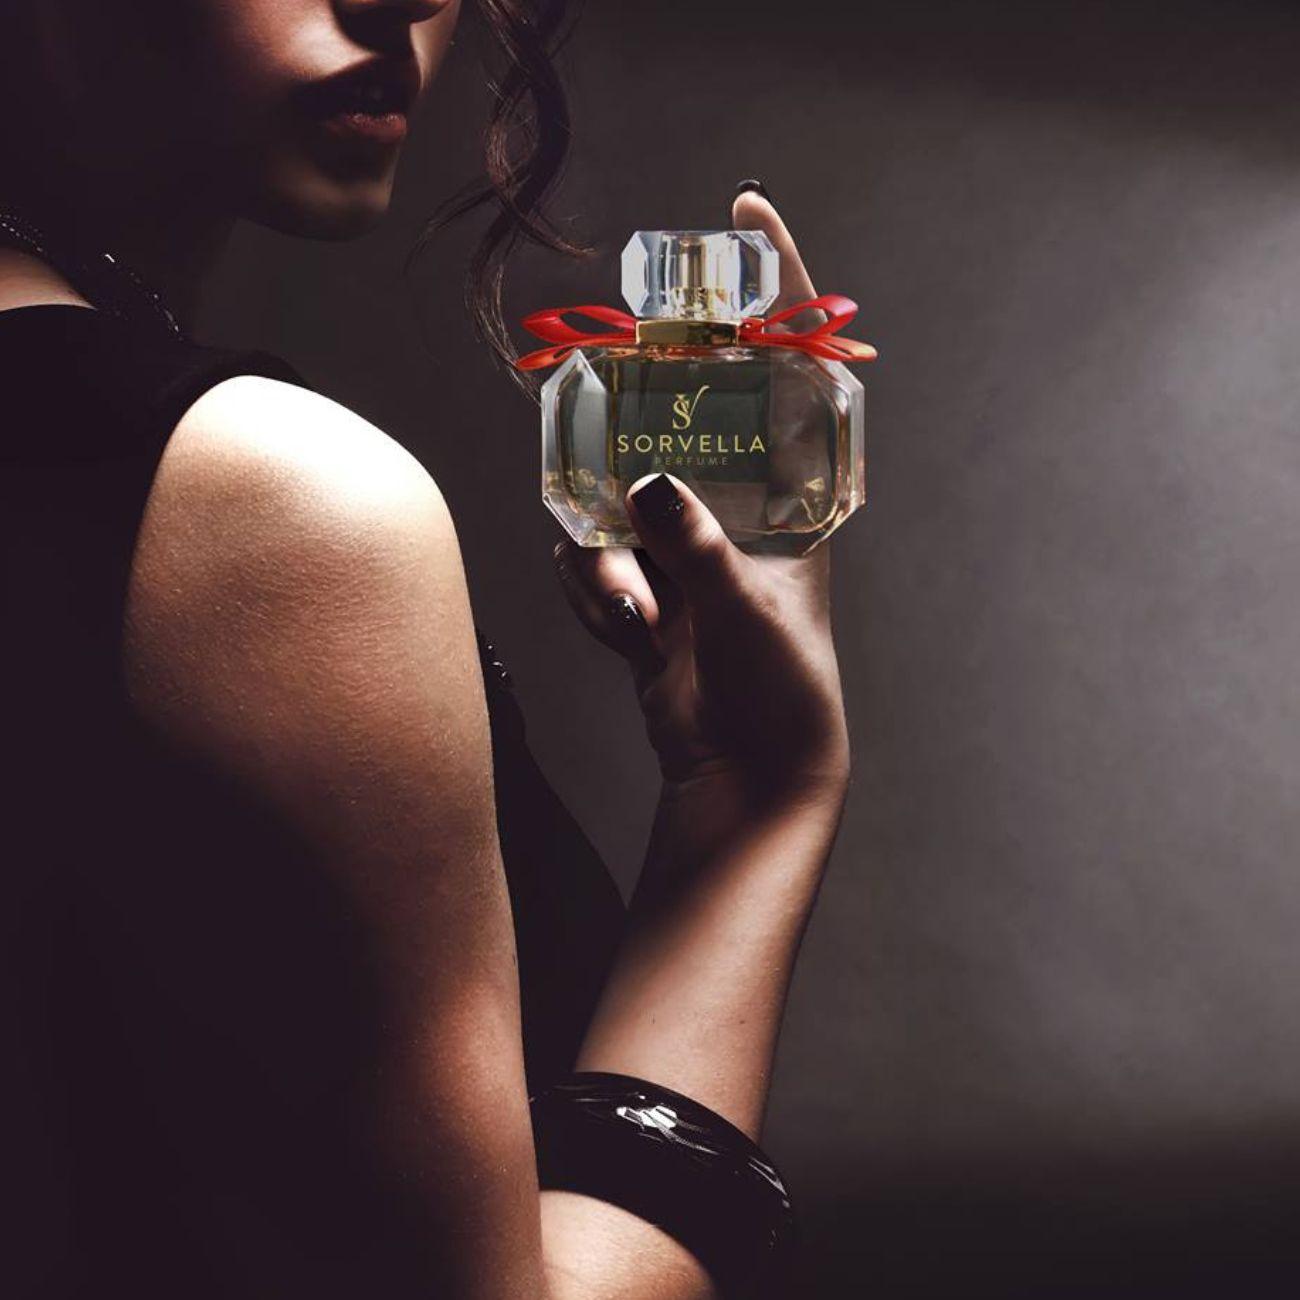 10 najlepszych perfum na walentynki - ranking - sorvellaperfume.pl